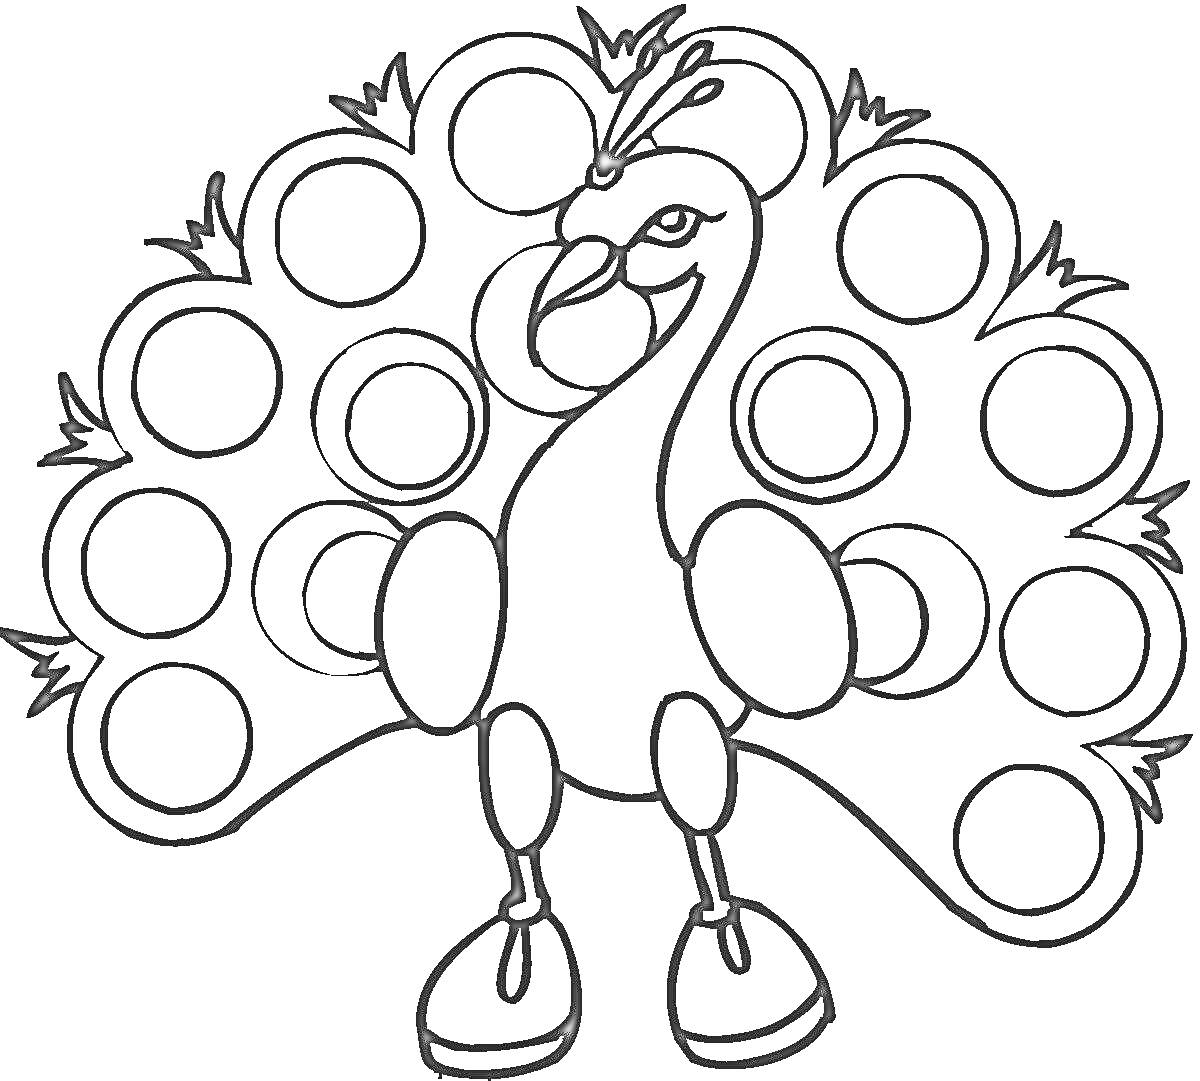 Раскраска Павлин с распущенным хвостом и кругами на перьях